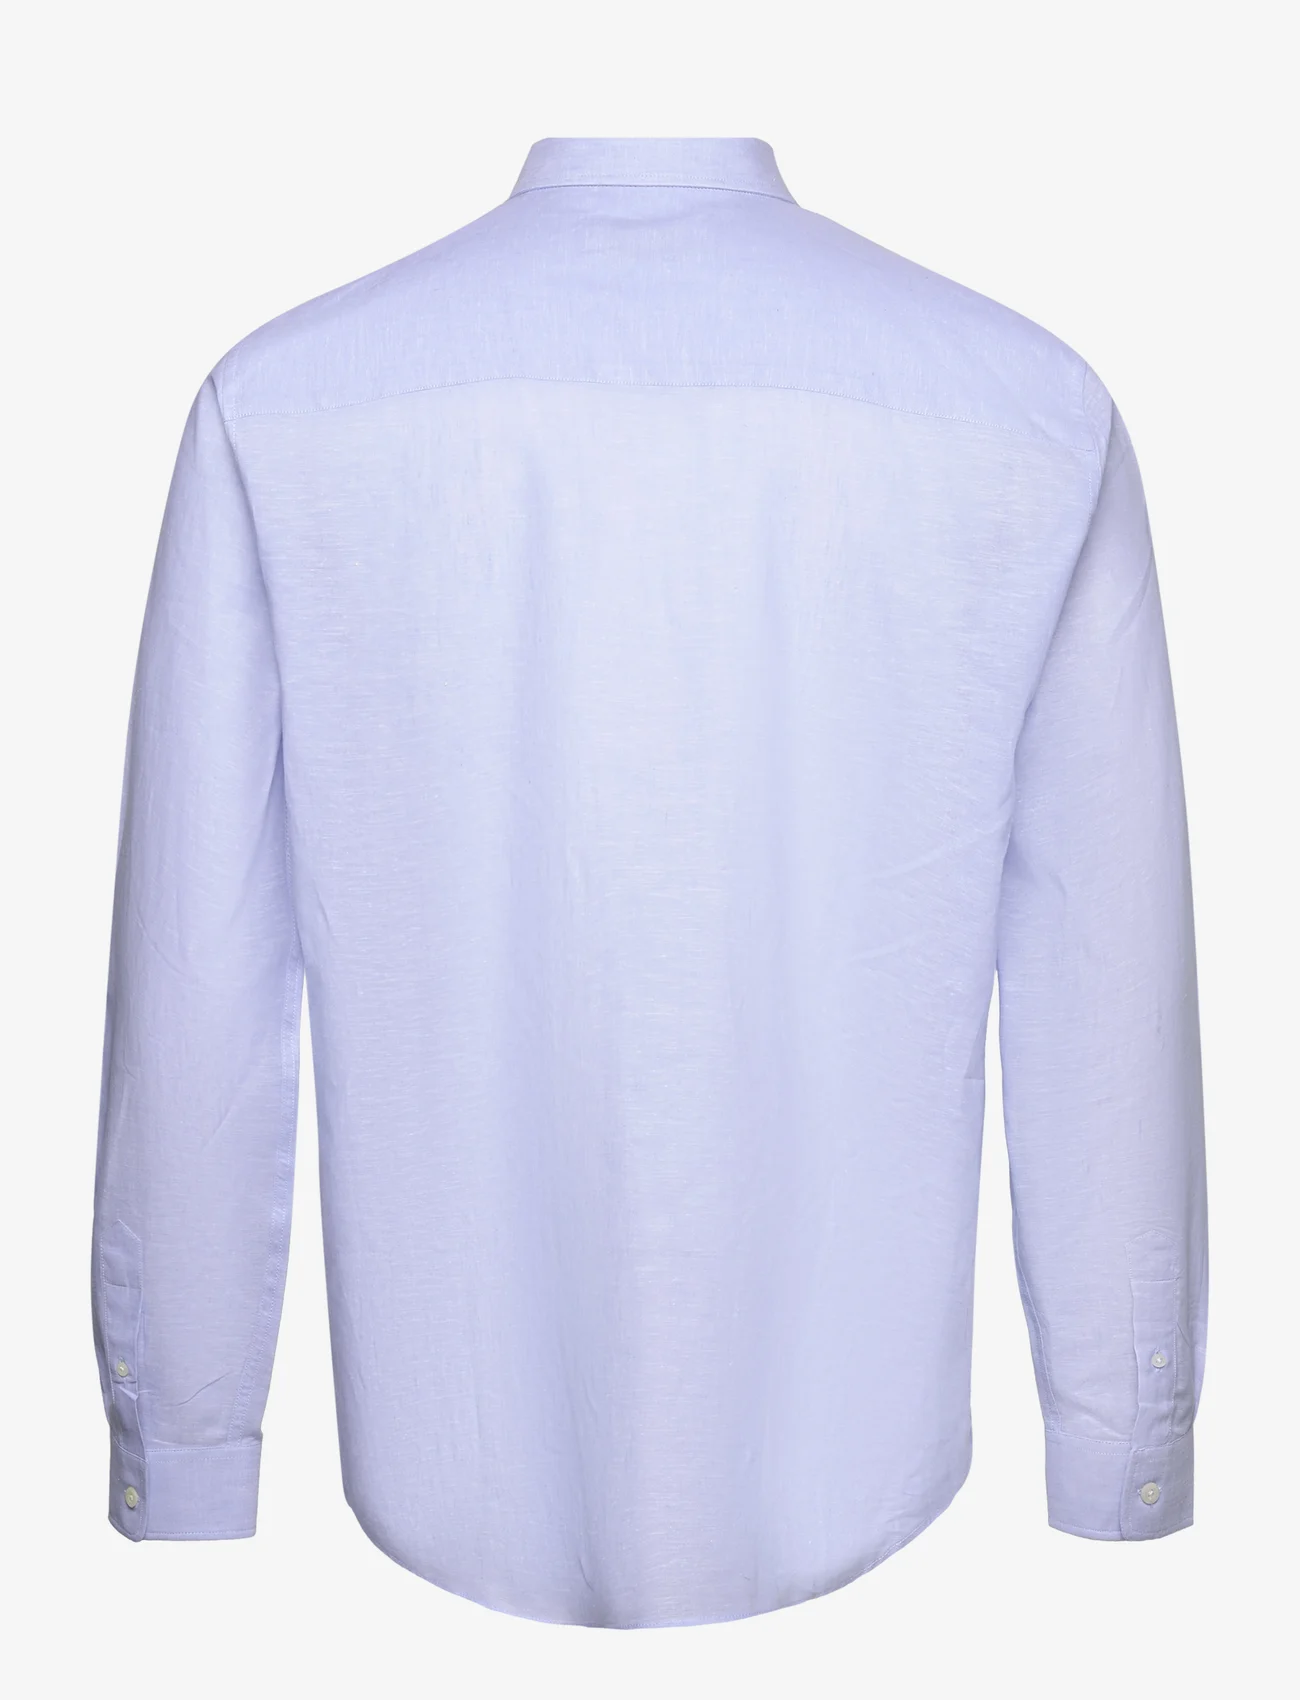 Maison Labiche Paris - CARNOT GOOD VIBES - casual shirts - linen light blue - 1